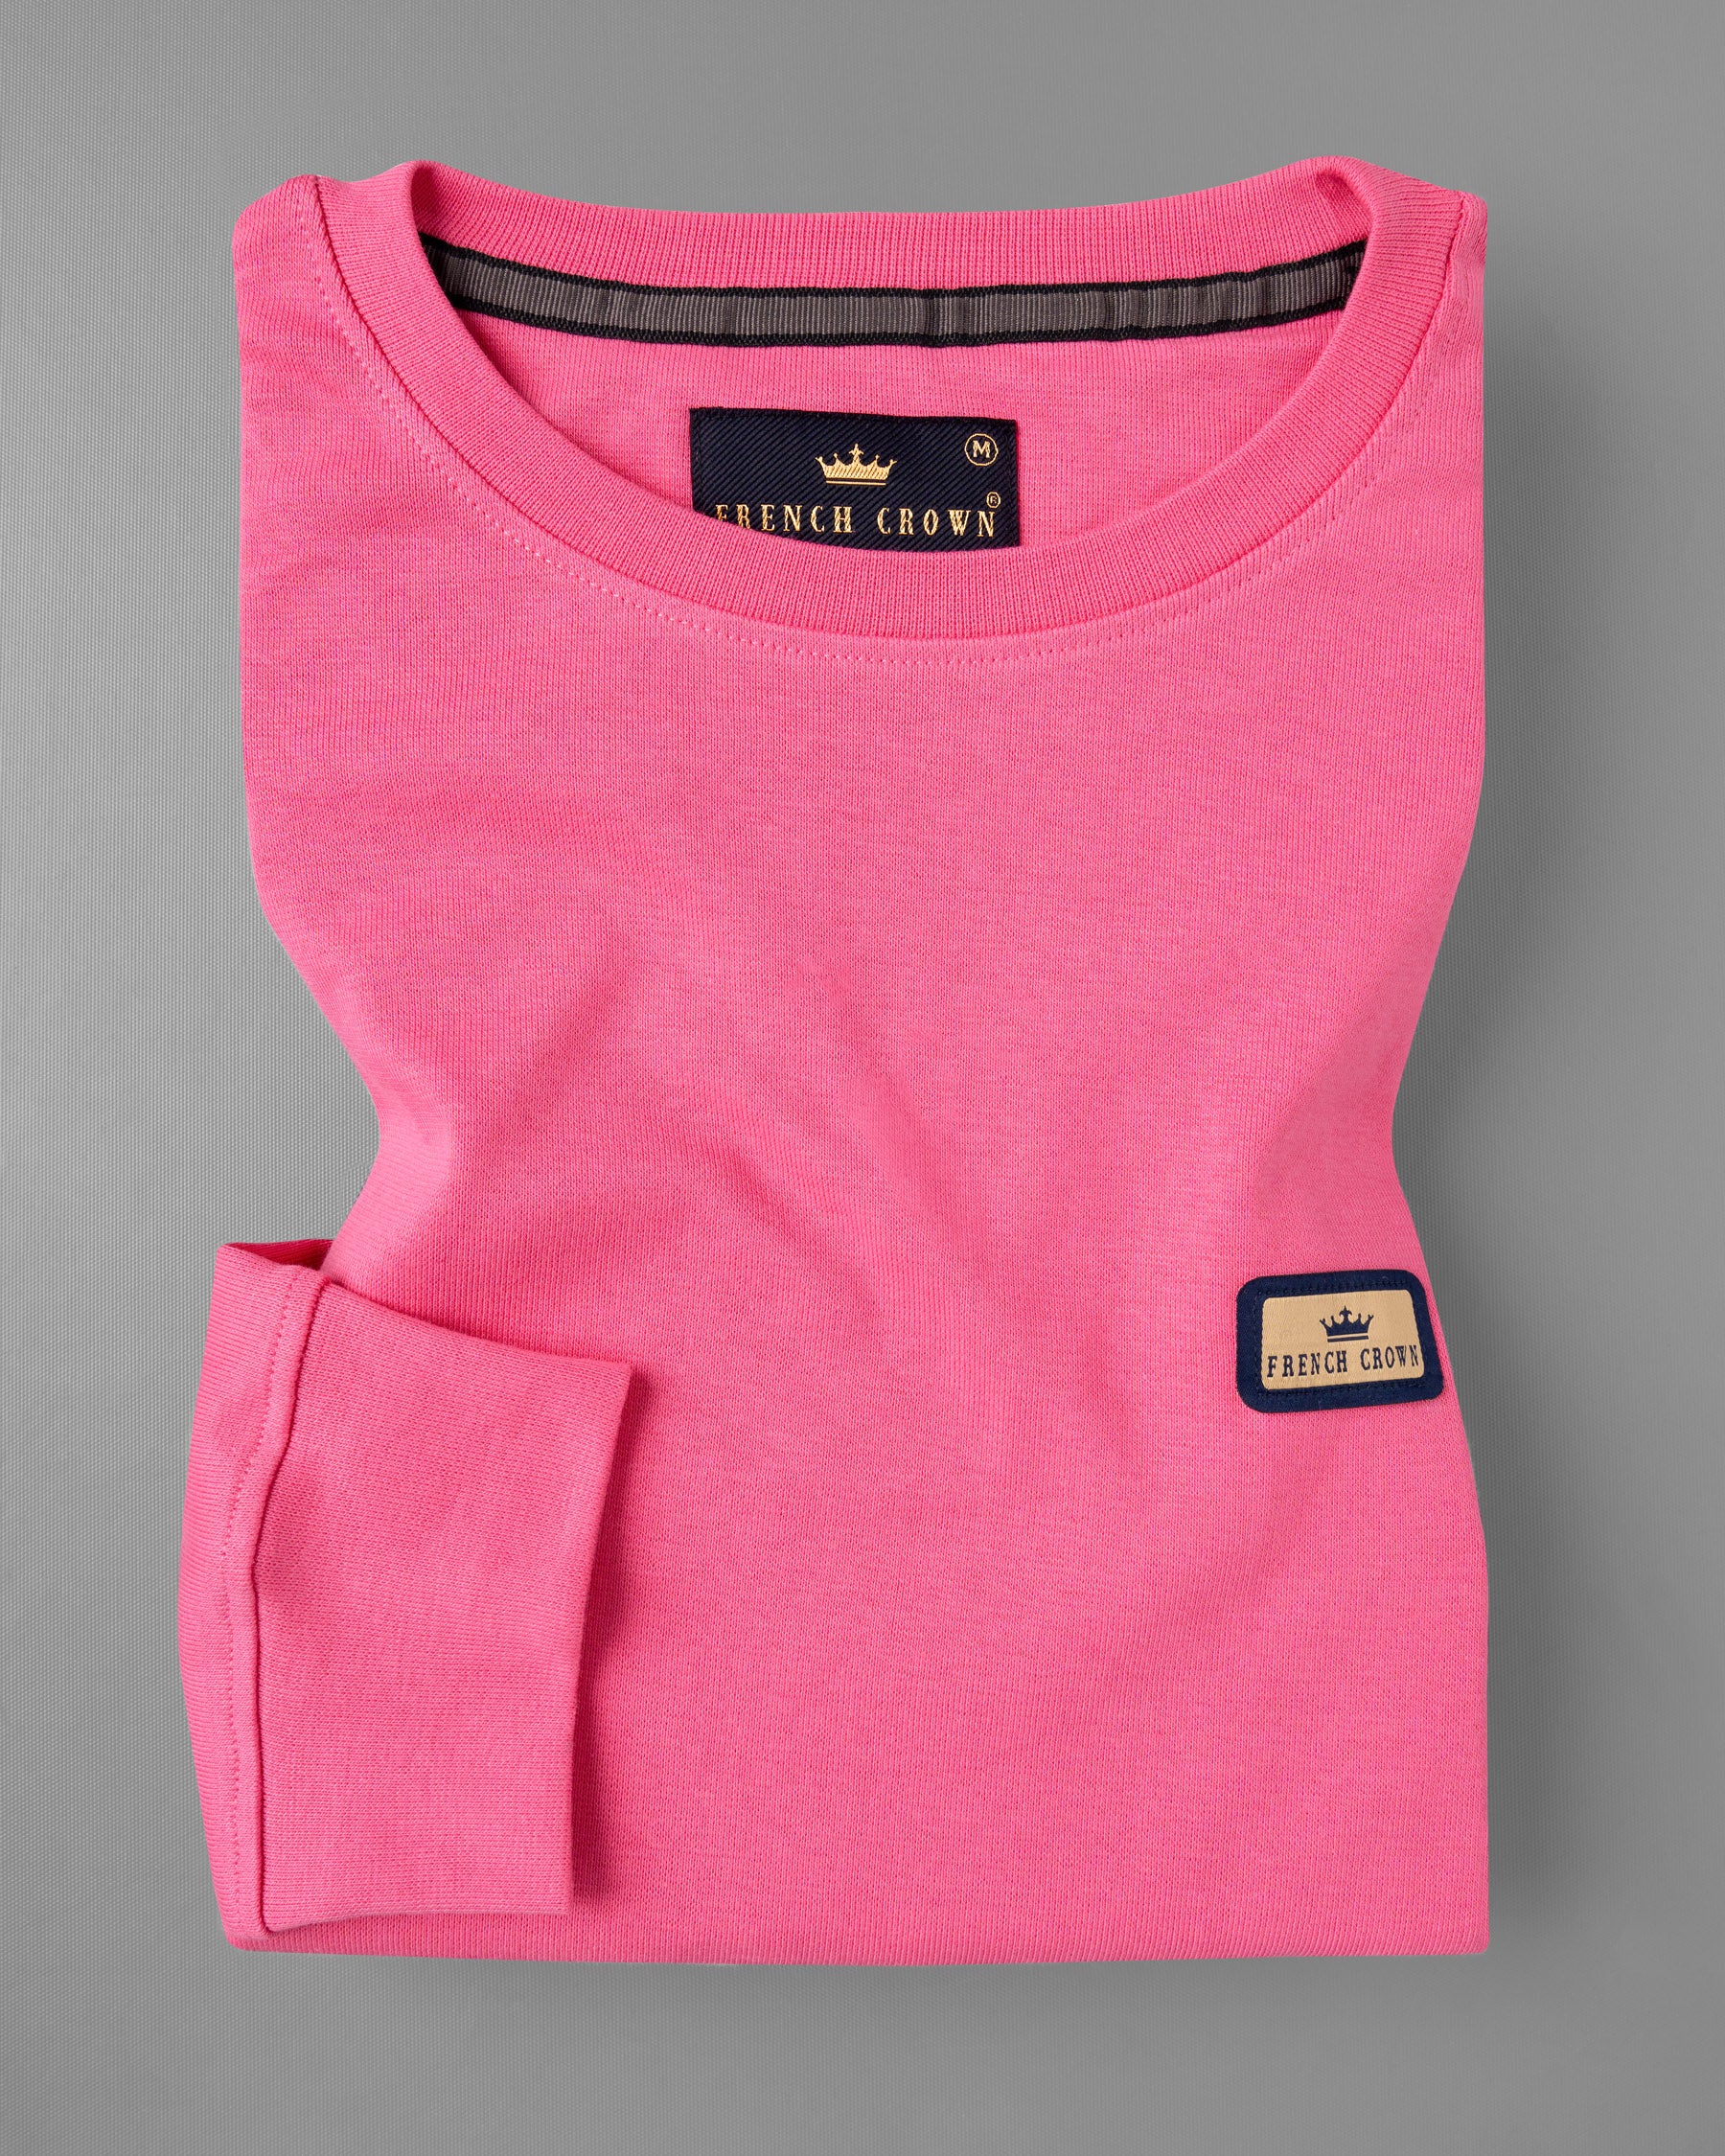 Brick Pink Full Sleeve Premium Cotton Jersey Sweatshirt TS474-S, TS474-M, TS474-L, TS474-XL, TS474-XXL